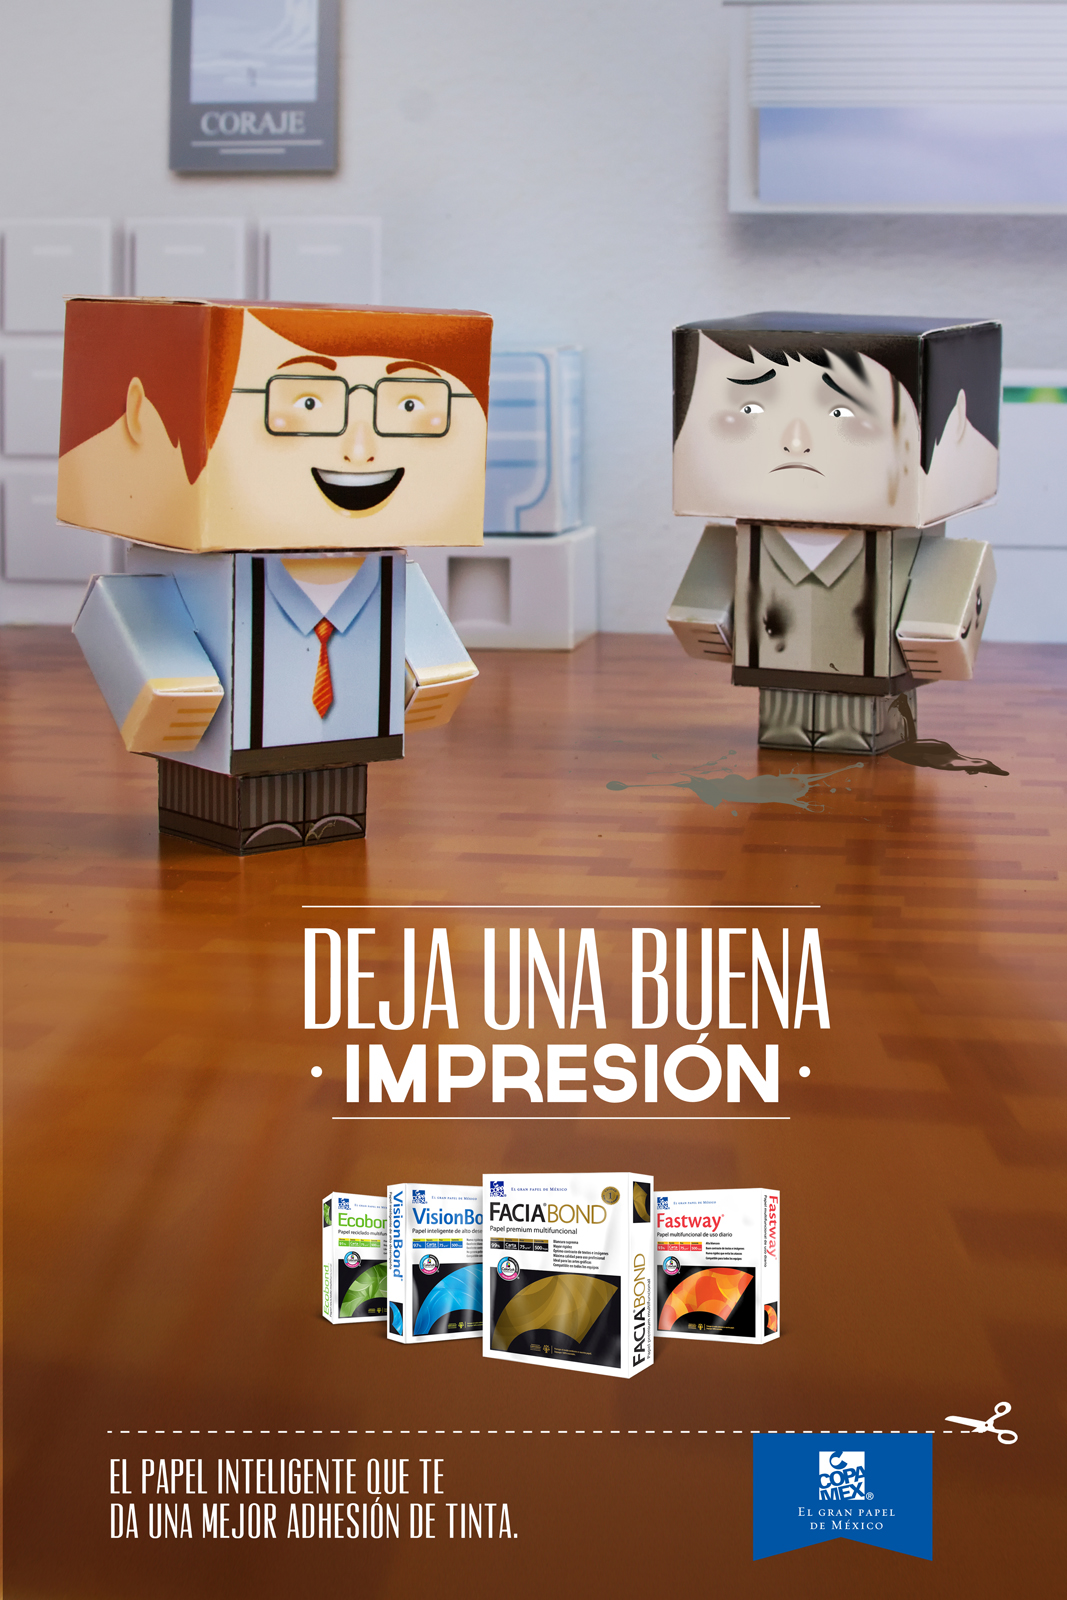 墨西哥Copamex办公设备平面广告设计 